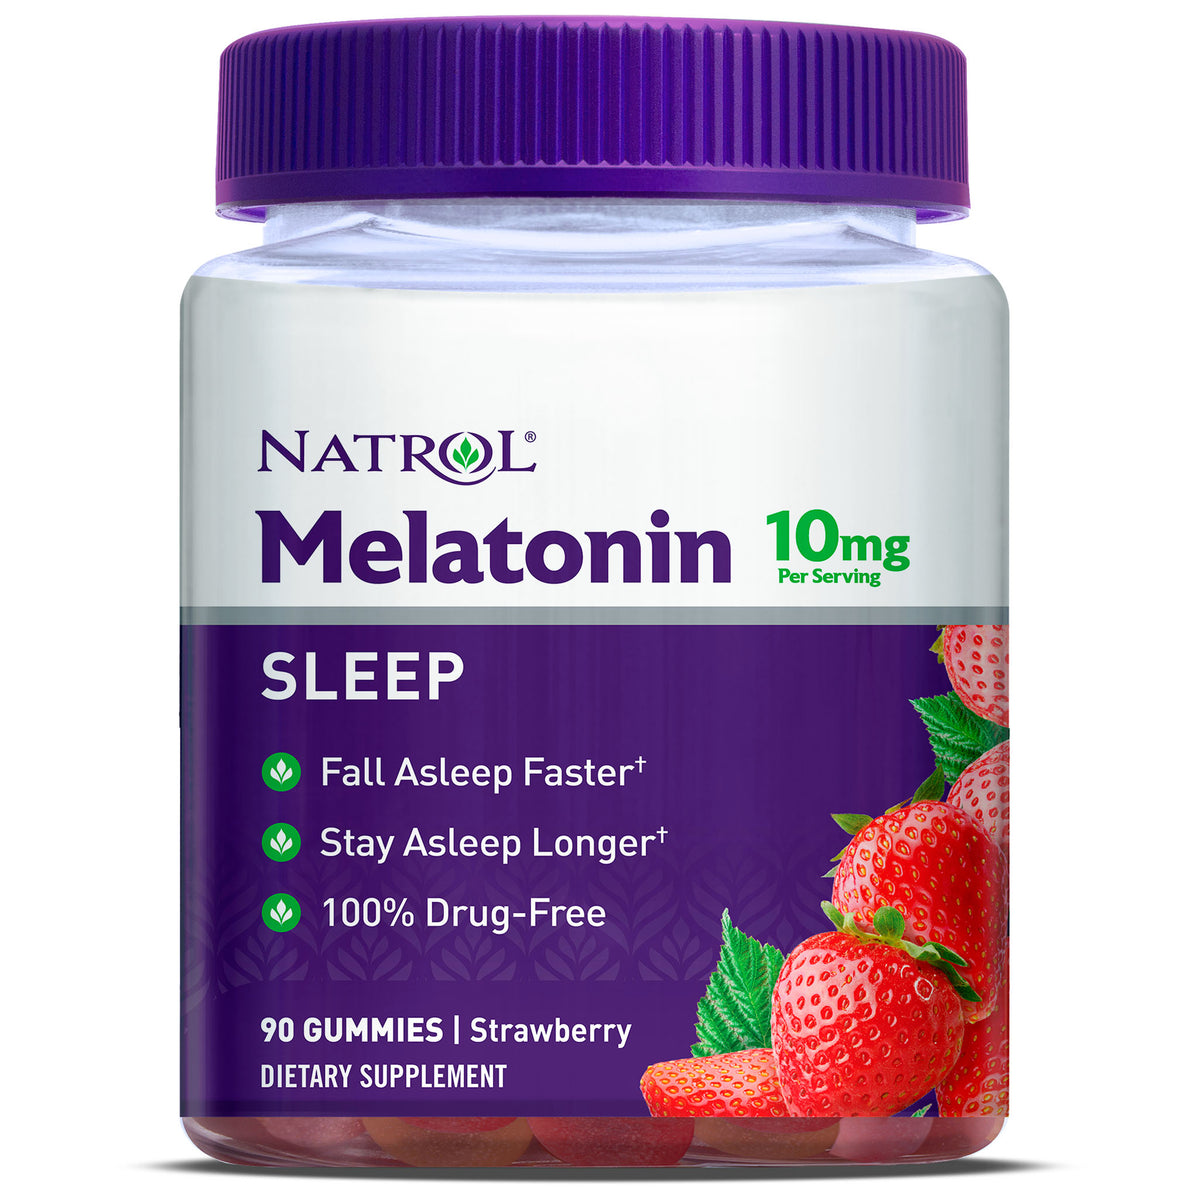 Có tồn tại những tác dụng phụ nào khác ngoài việc giúp ngủ ngon khi sử dụng melatonin 10mg?